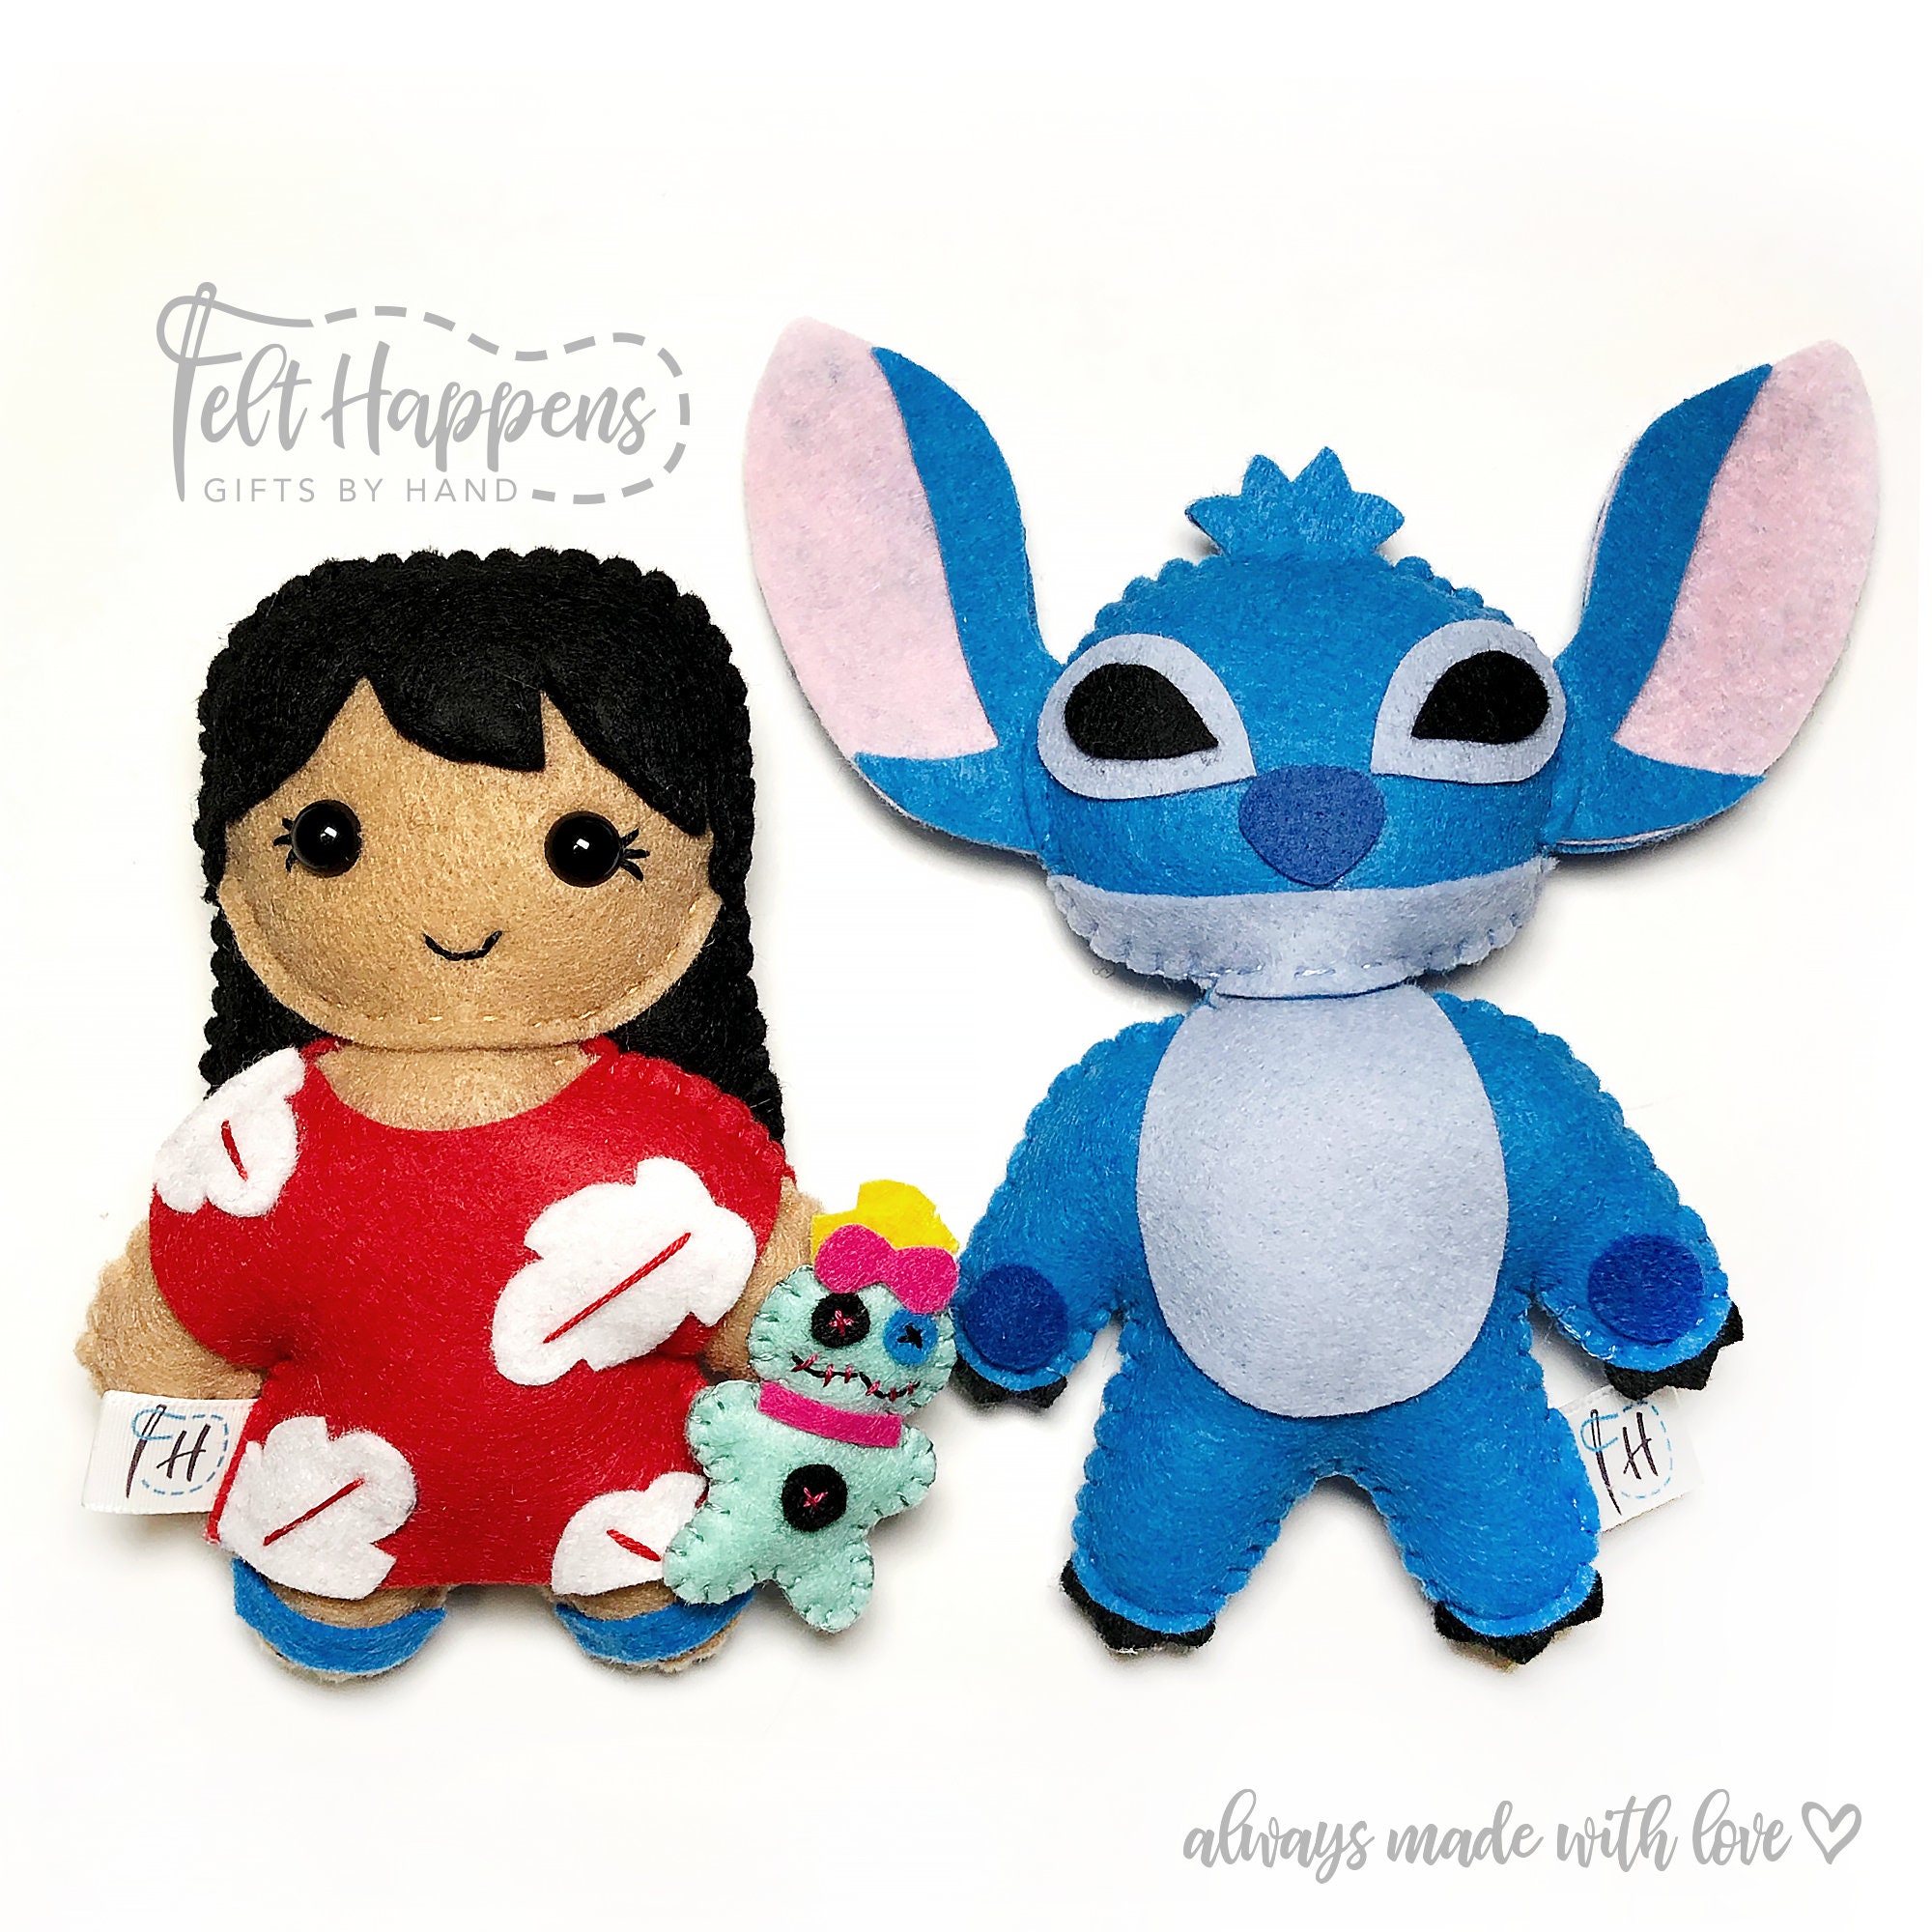 Stitch Soft Doll mignon en peluche jouet d'anniversaire cadeau bleu